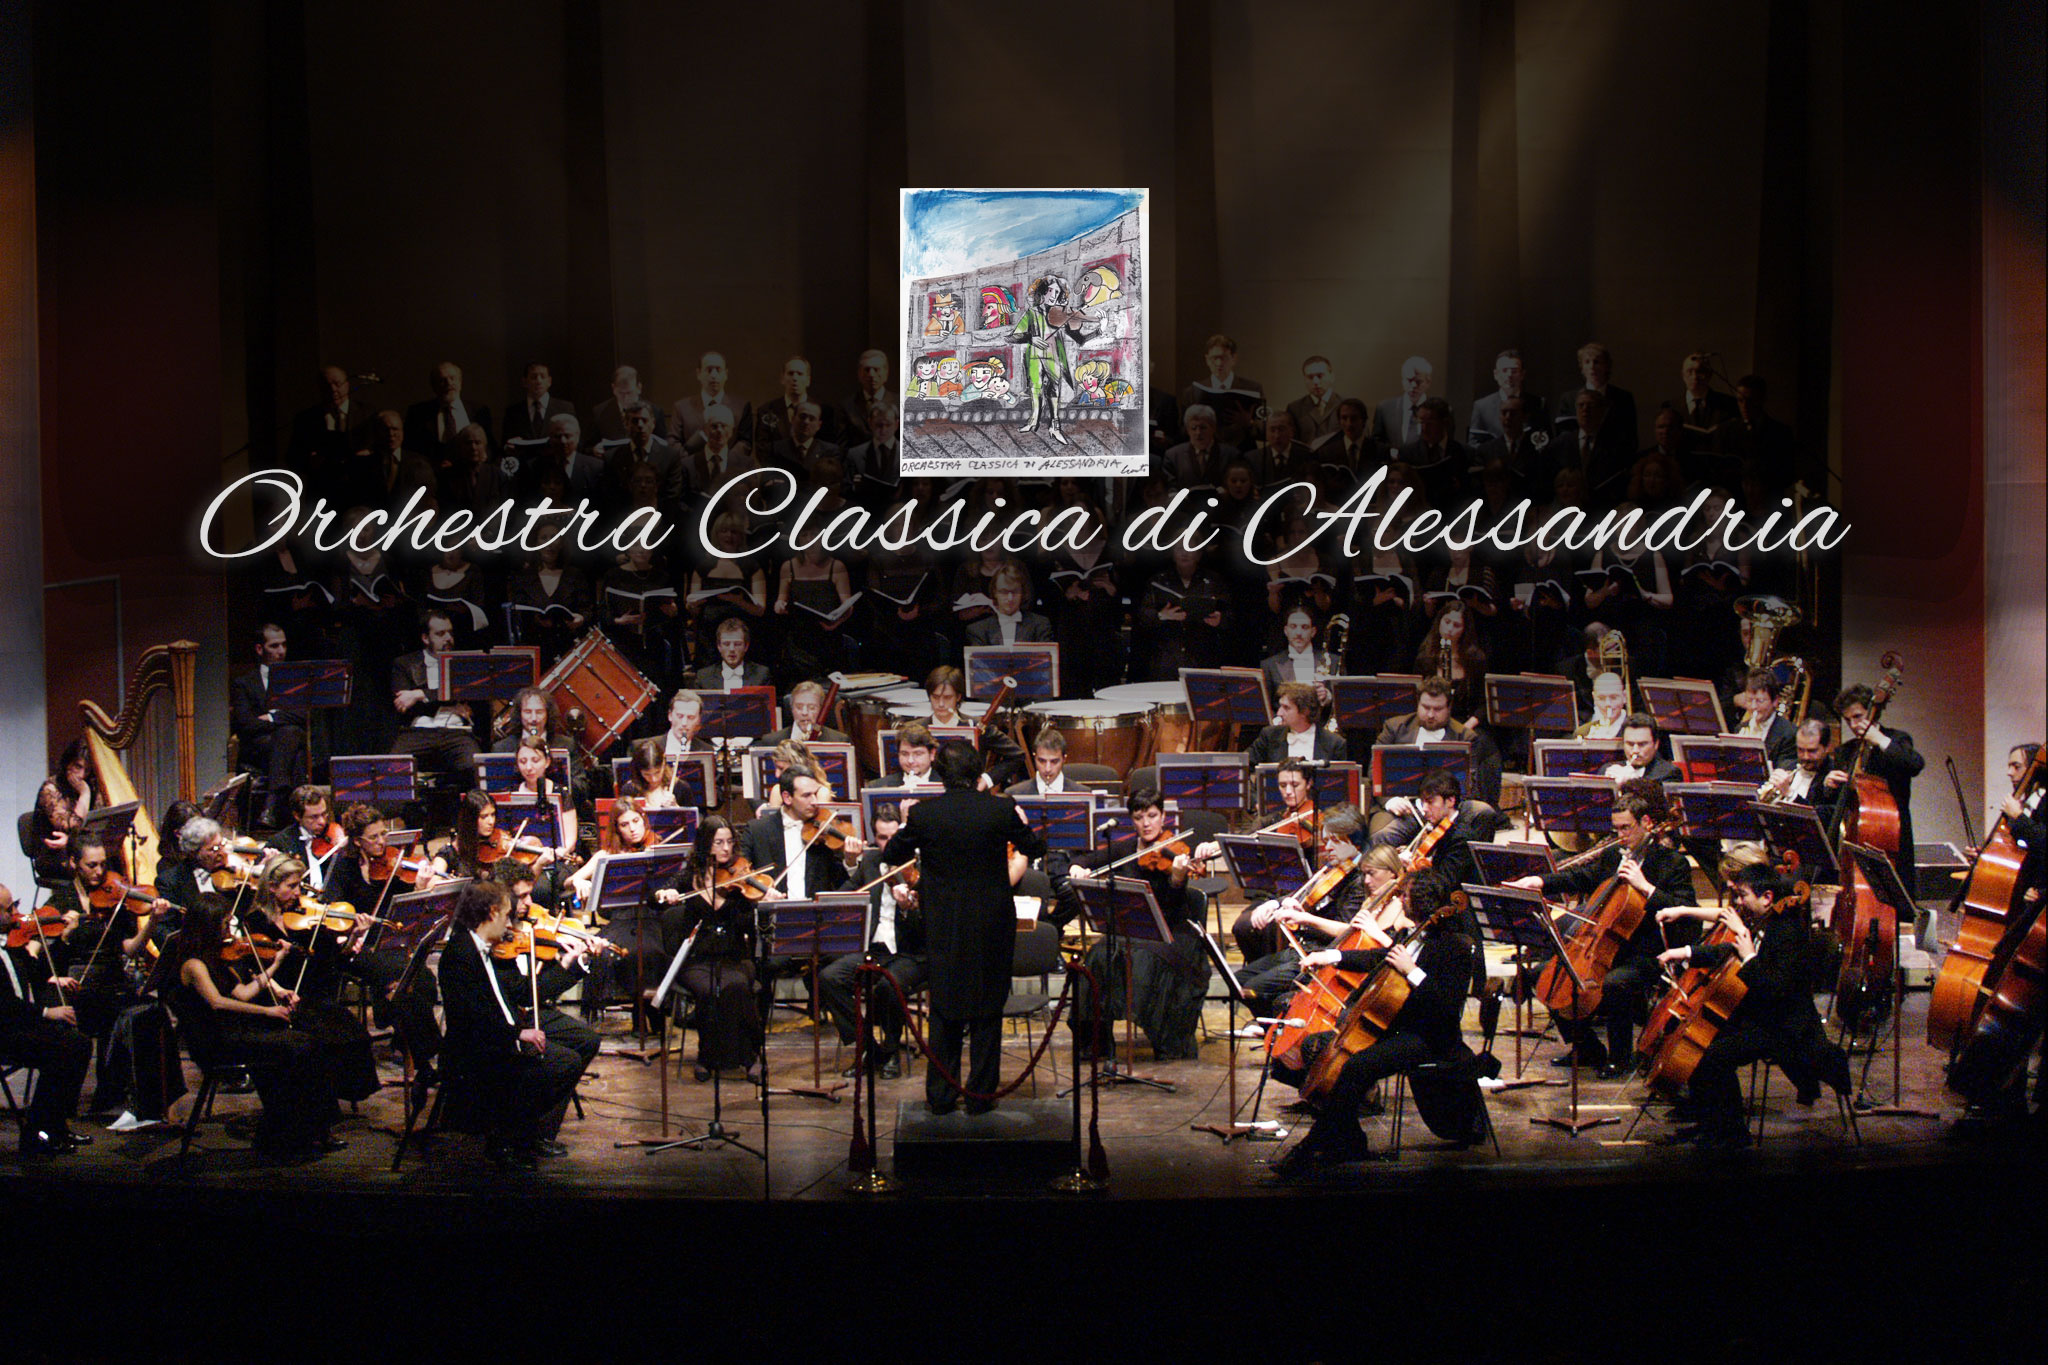 Orchestra Classica di Alessandria cerca una sede a Novi, in attesa di un nuovo Teatro: ma non sarà un addio